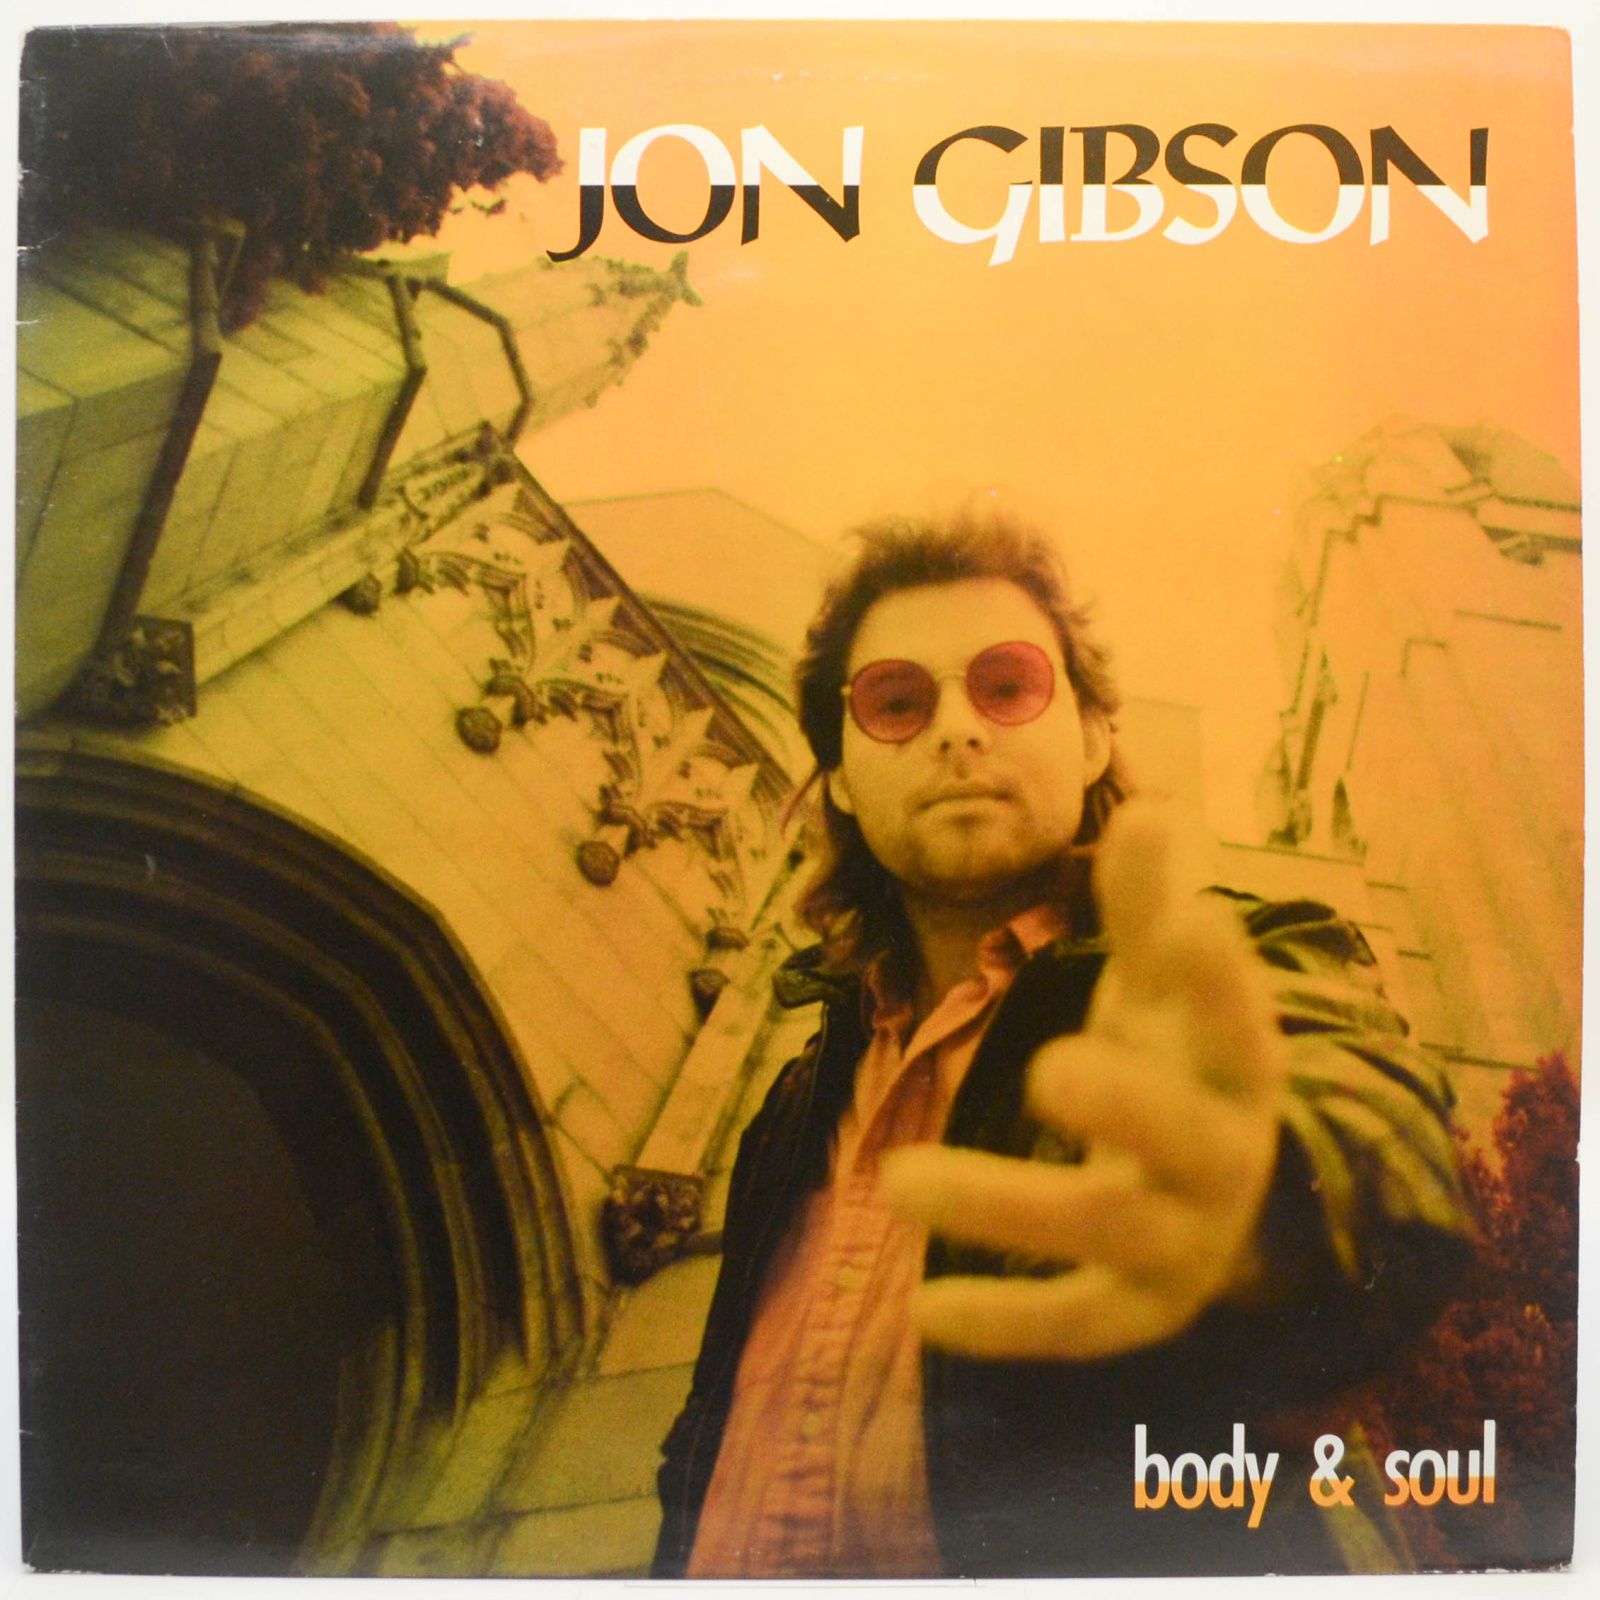 Jon Gibson — Body & Soul, 1989